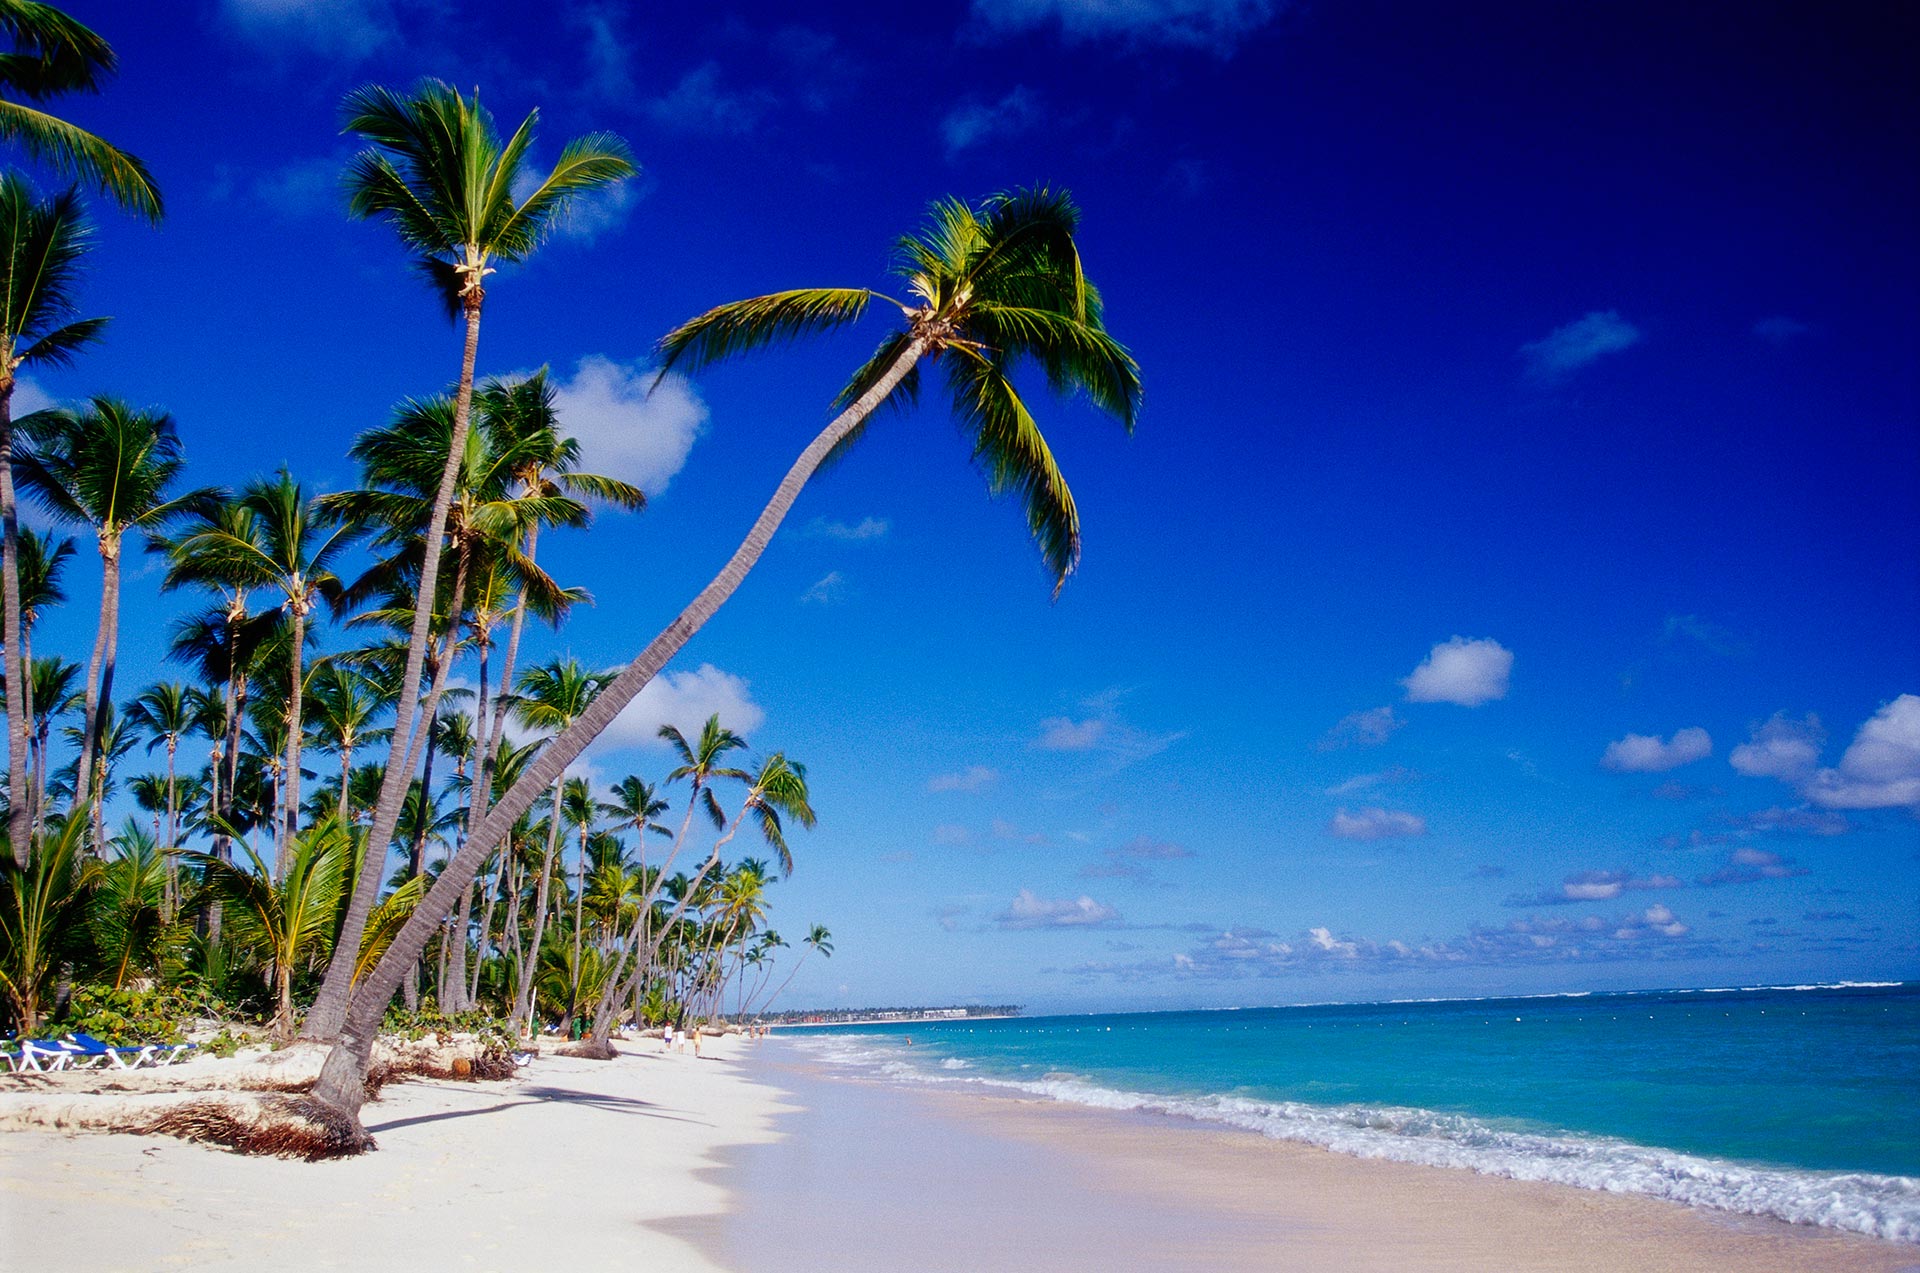 Ubicada en la popular zona de Punta Cana, la playa Bávaro se extiende 50 km